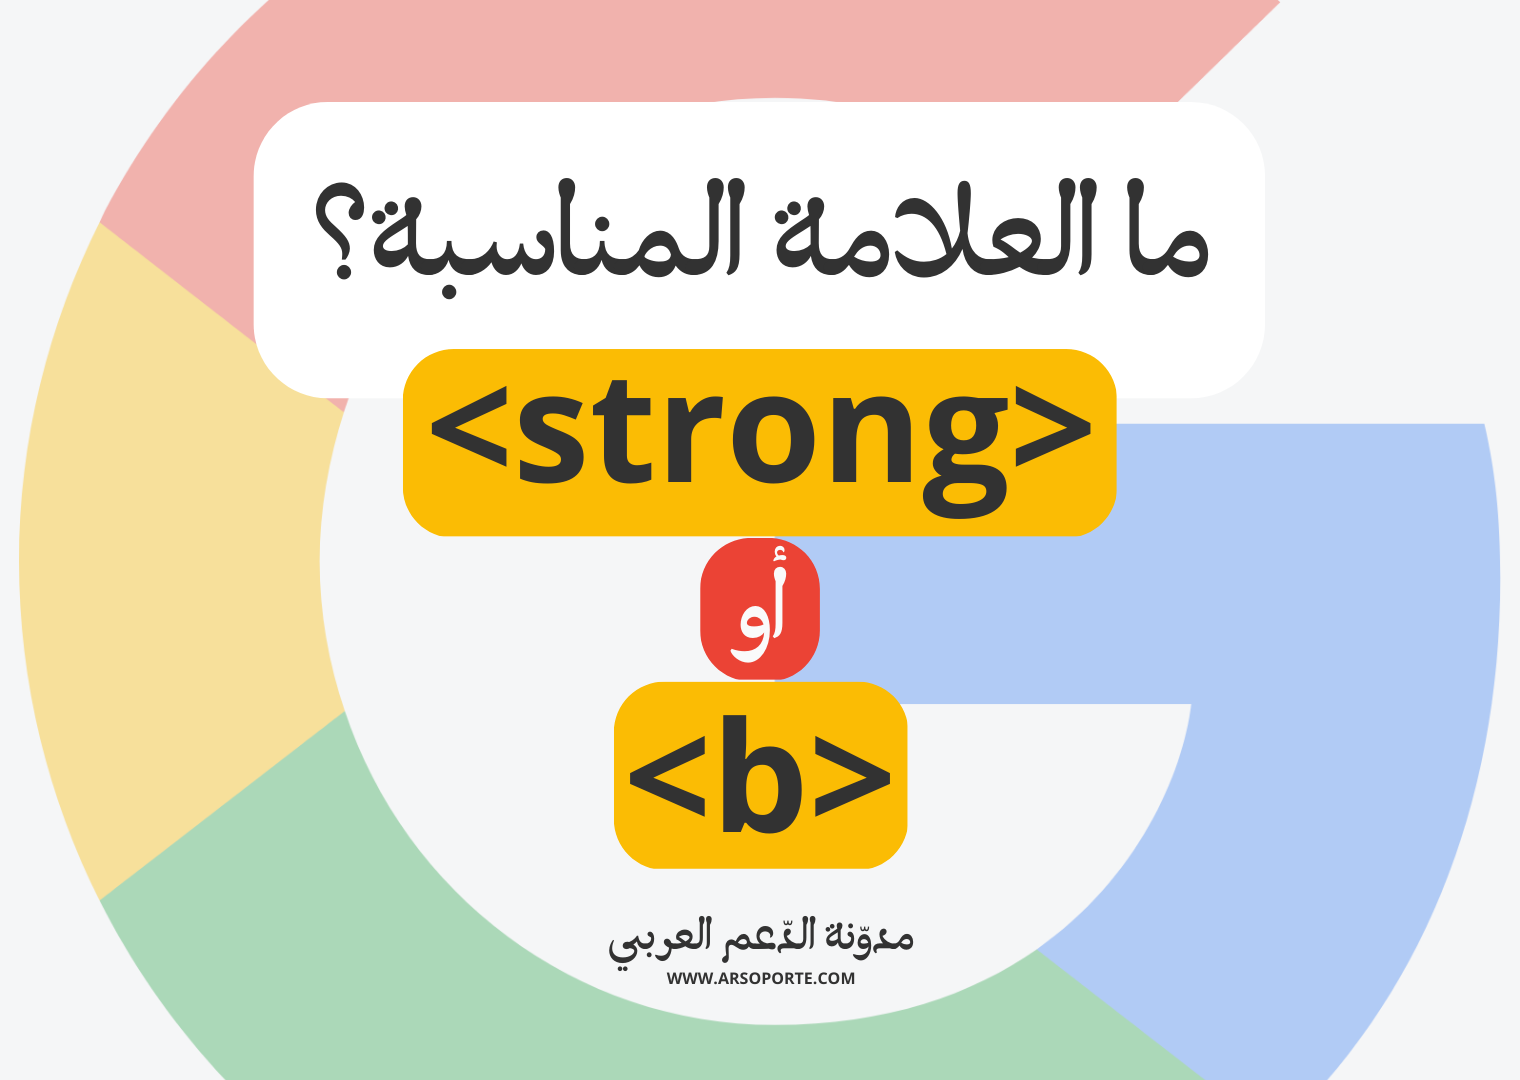 متى تستخدم علامة <strong> ومتى تستخدم <b>؟